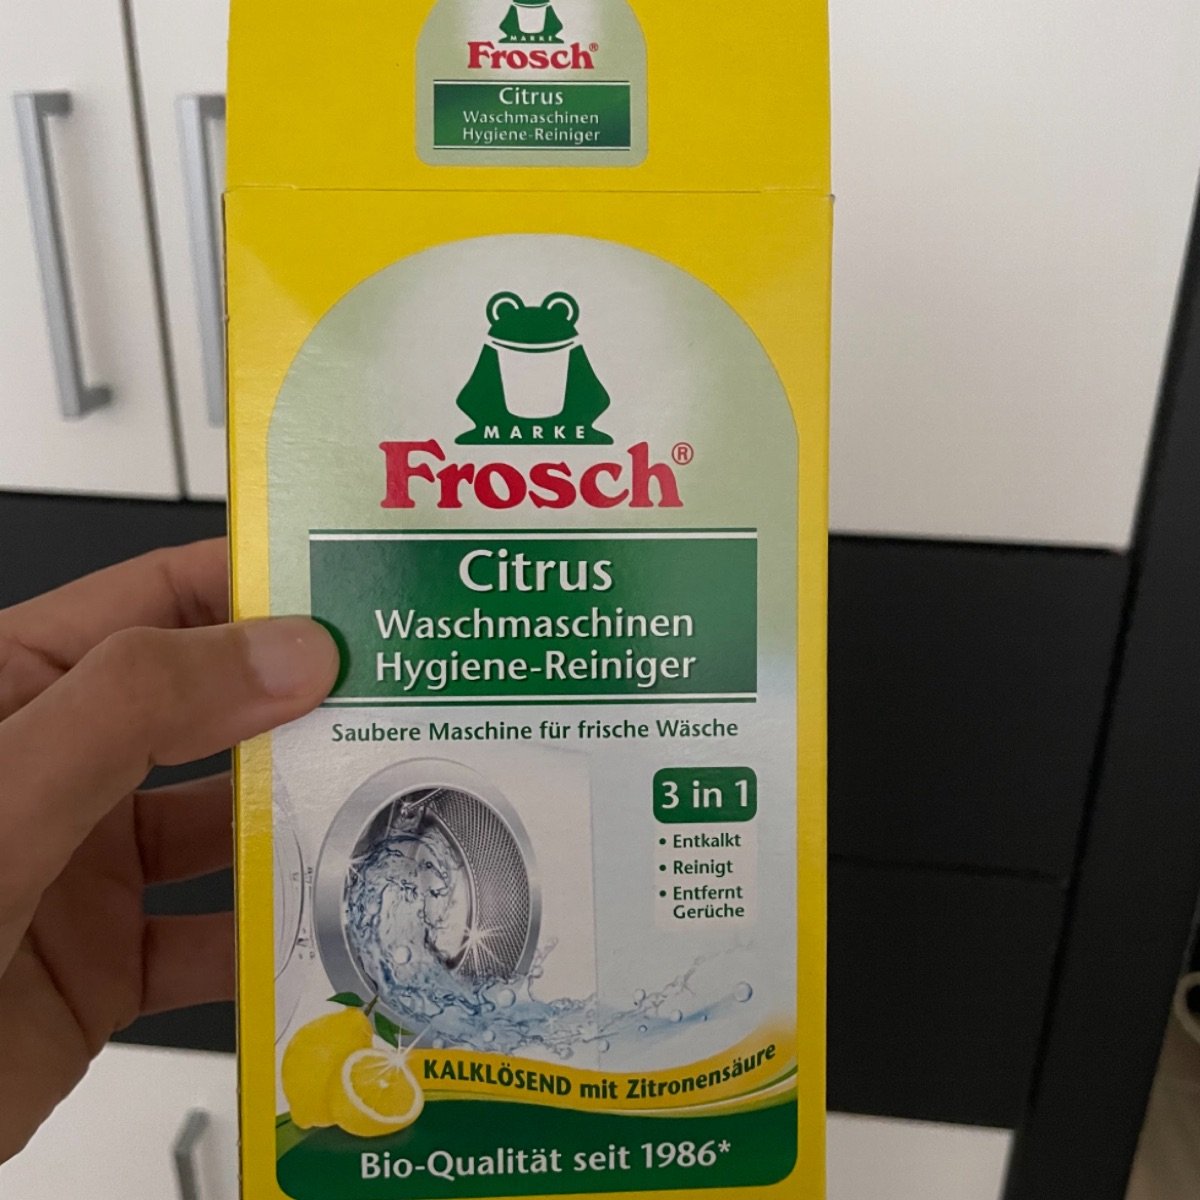 Frosch Citrus Waschmaschinen Hygiene-Reiniger Reviews